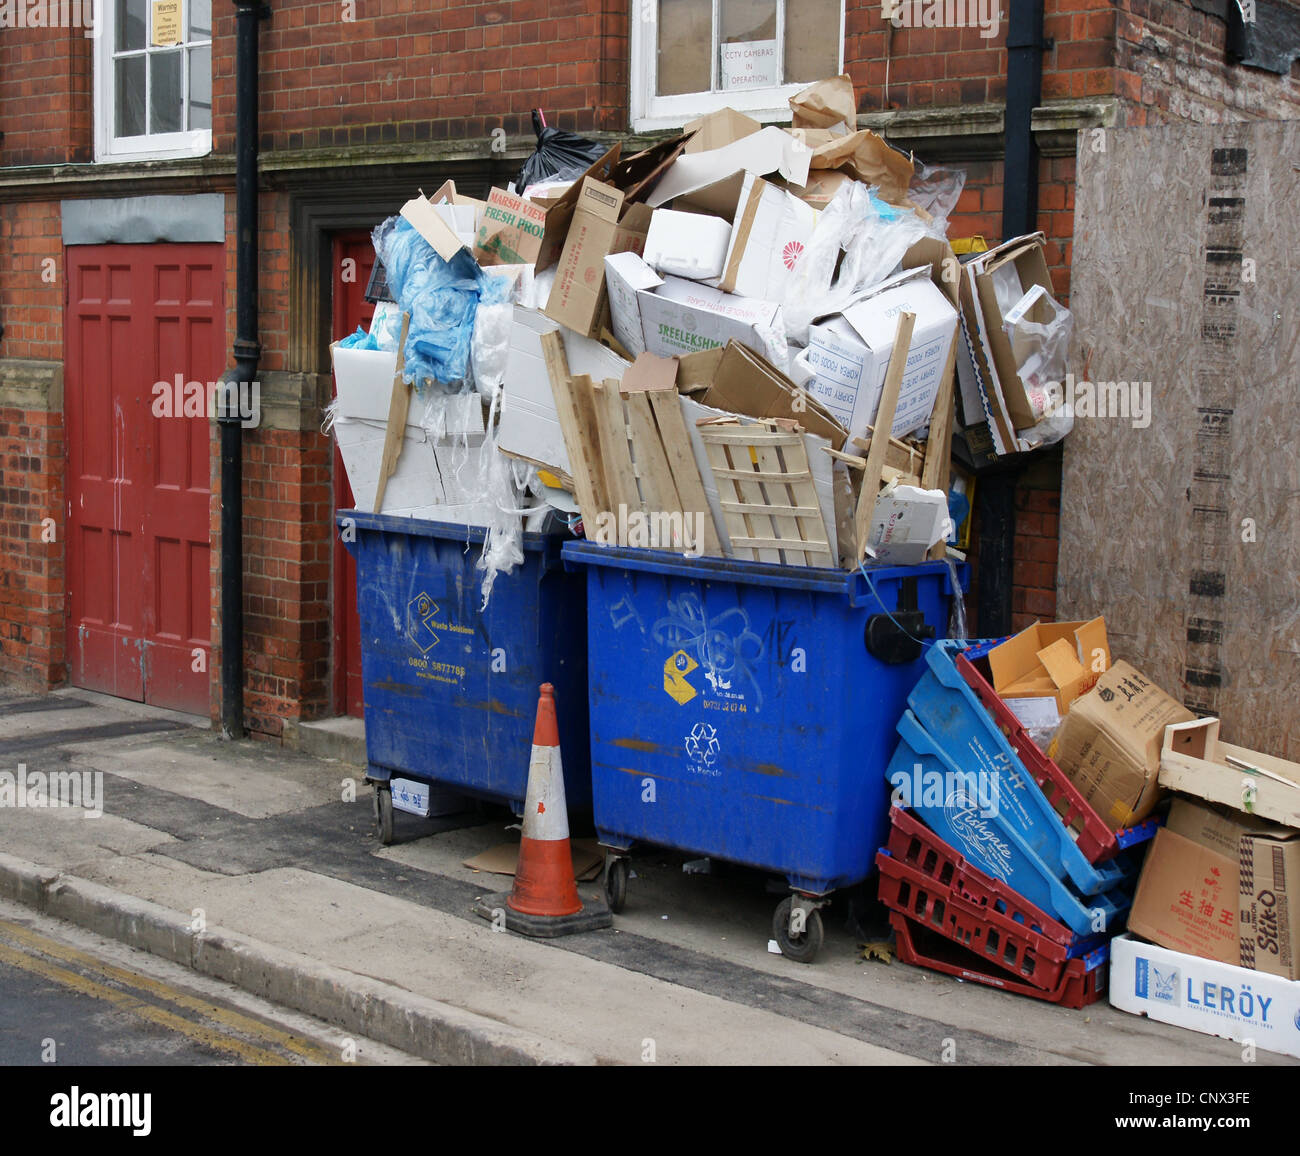 Overloaded rubbish bins, Stock Photo